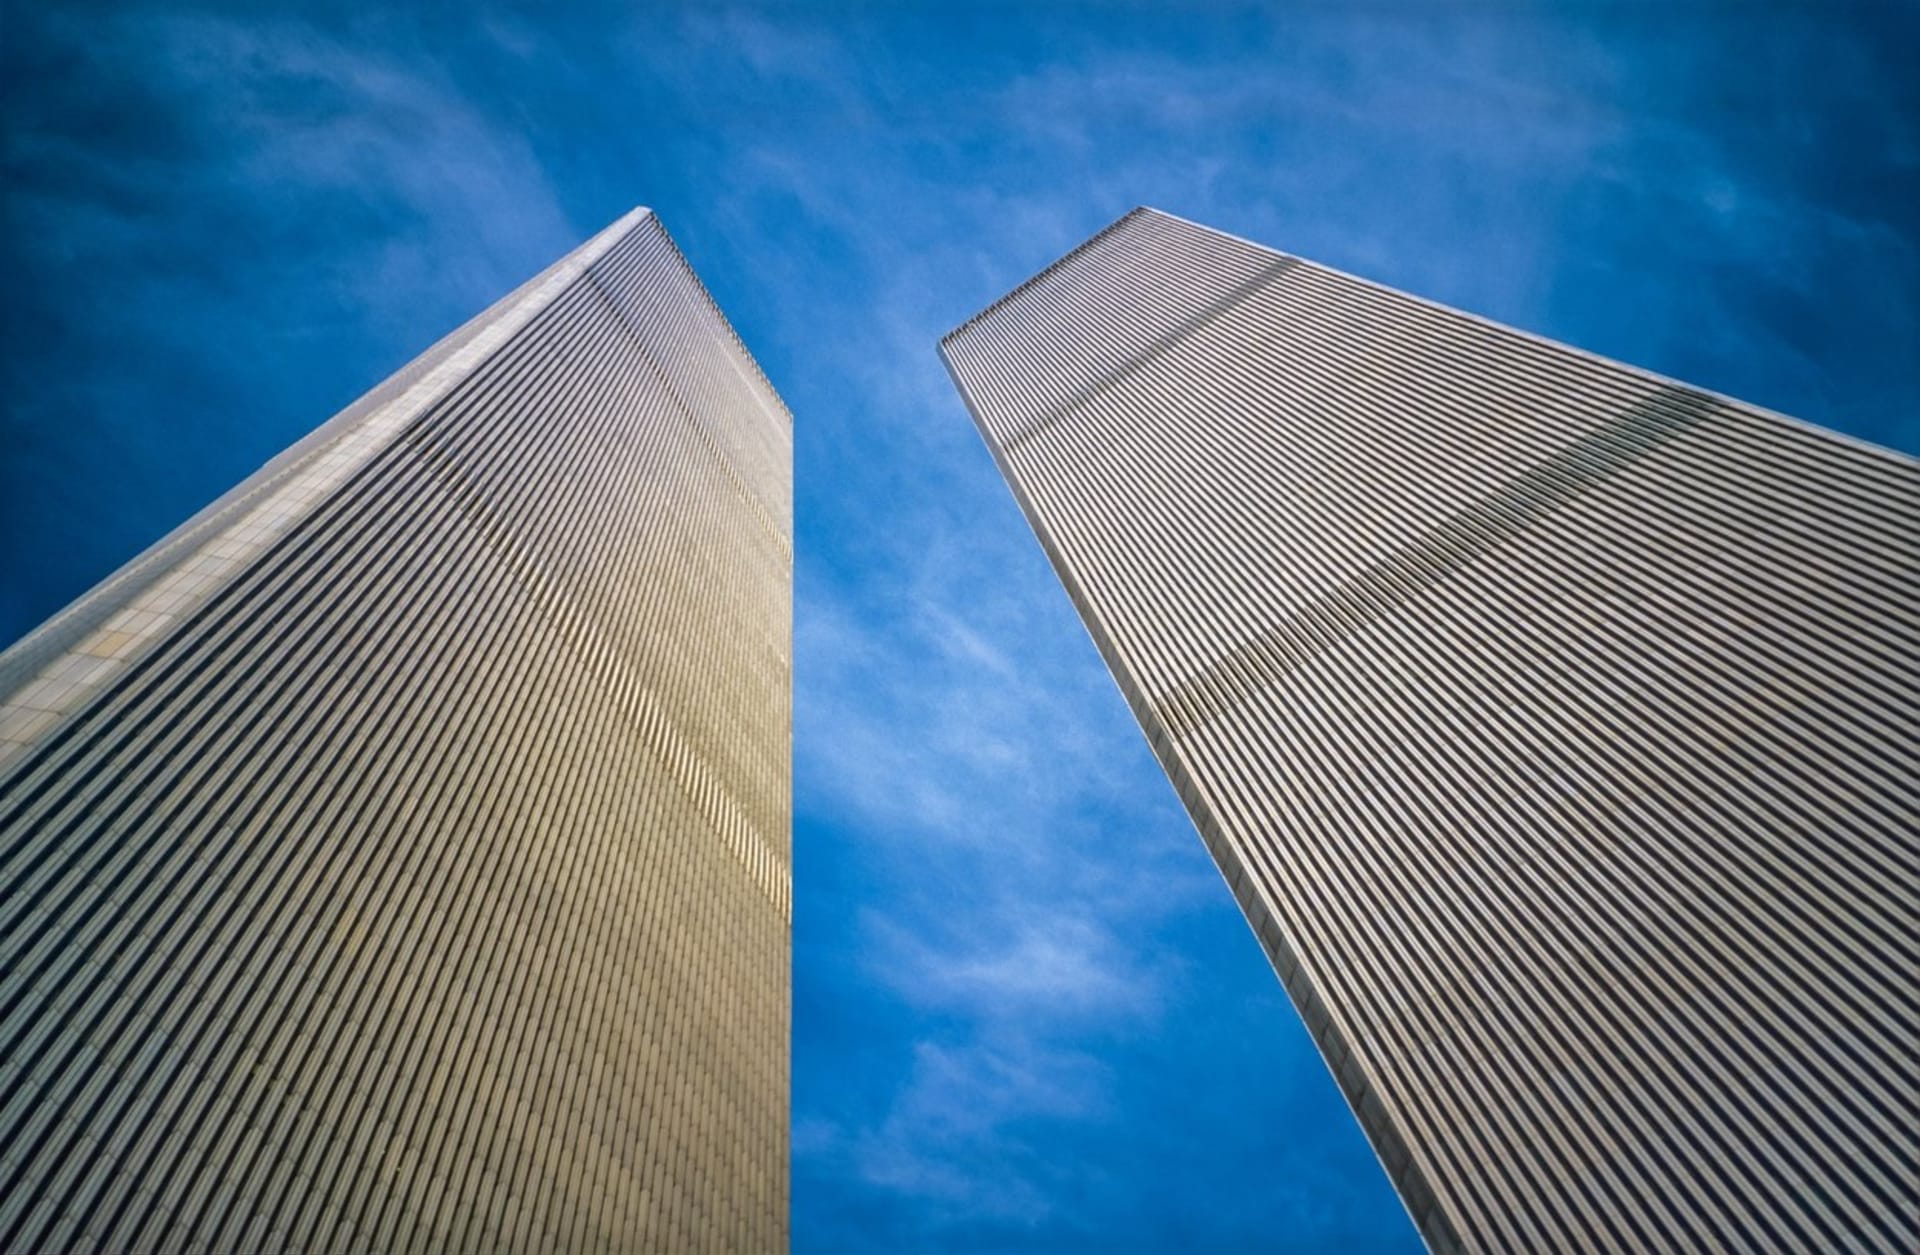 20 let od 11. září: Deset věcí, které jste o manhattanských Dvojčatech možná nevěděli